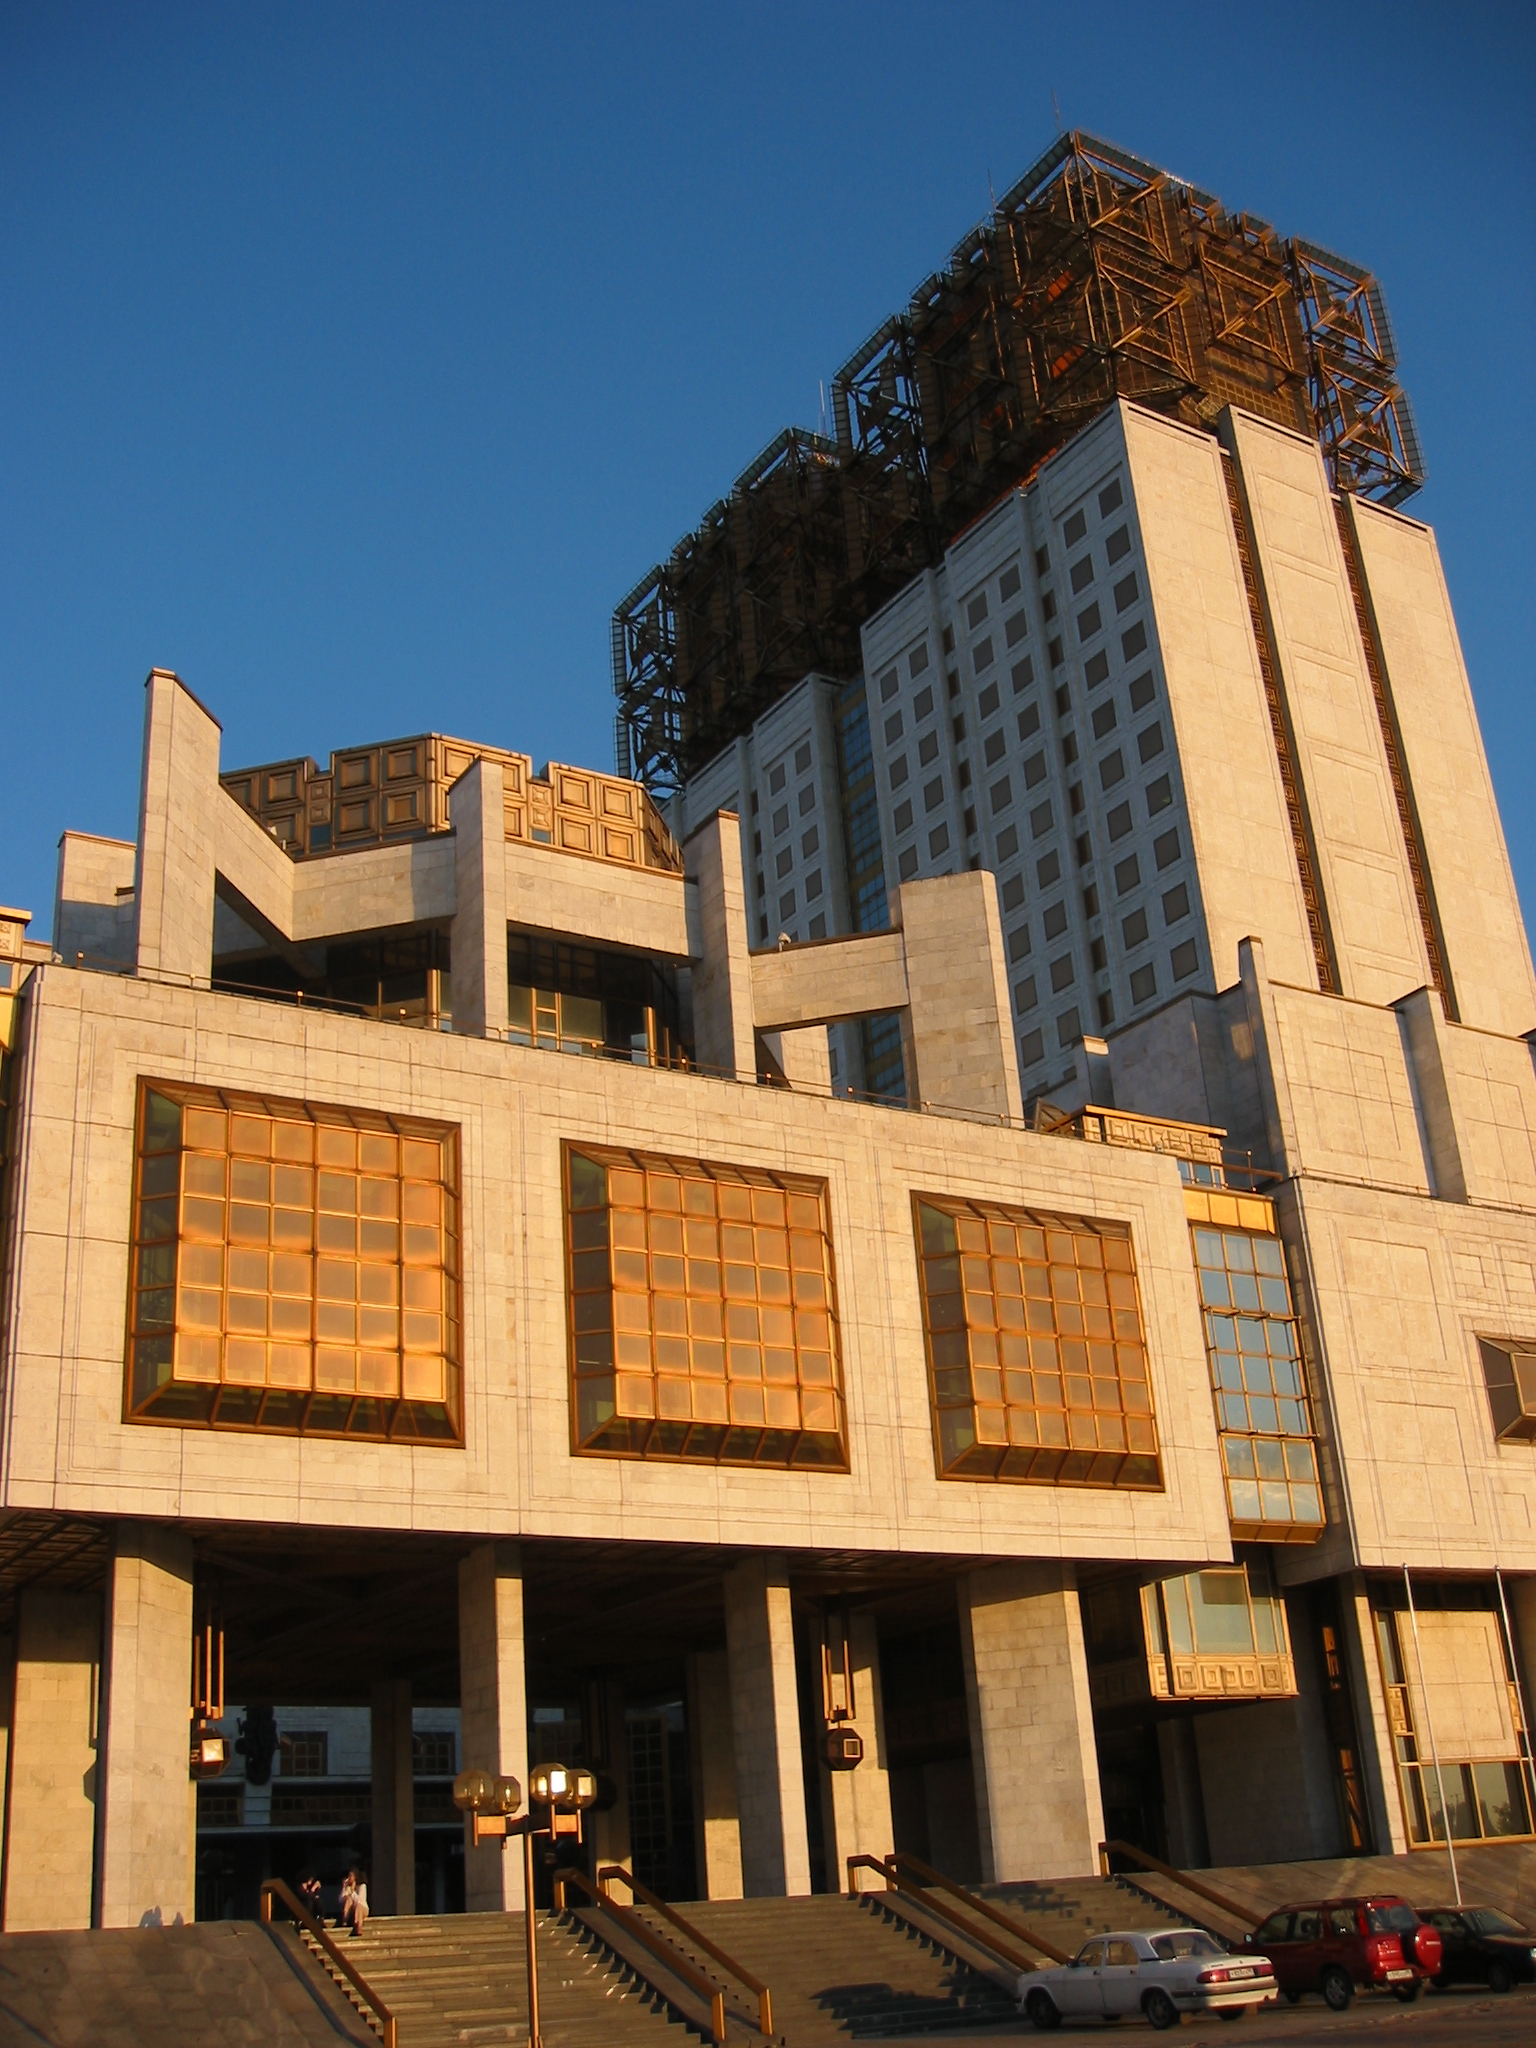 Architecture soviétique – Livre